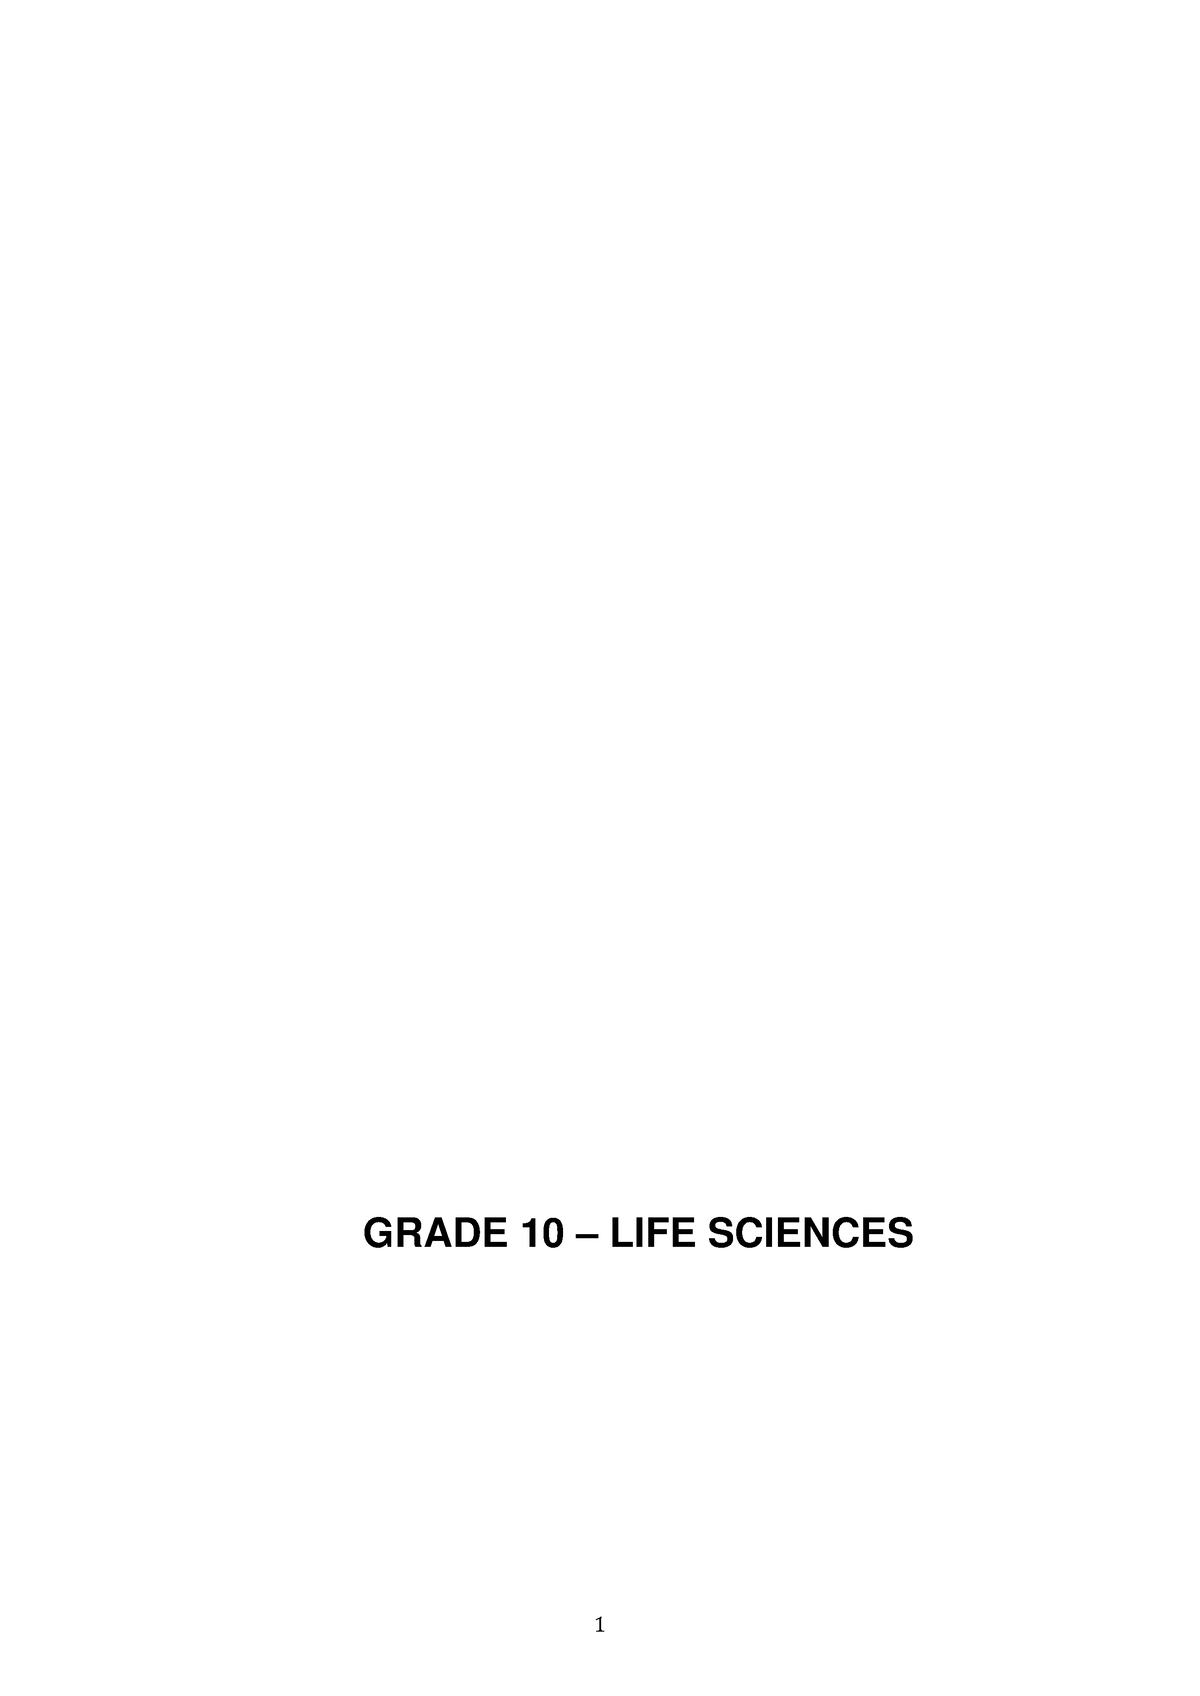 assignment grade 10 life sciences